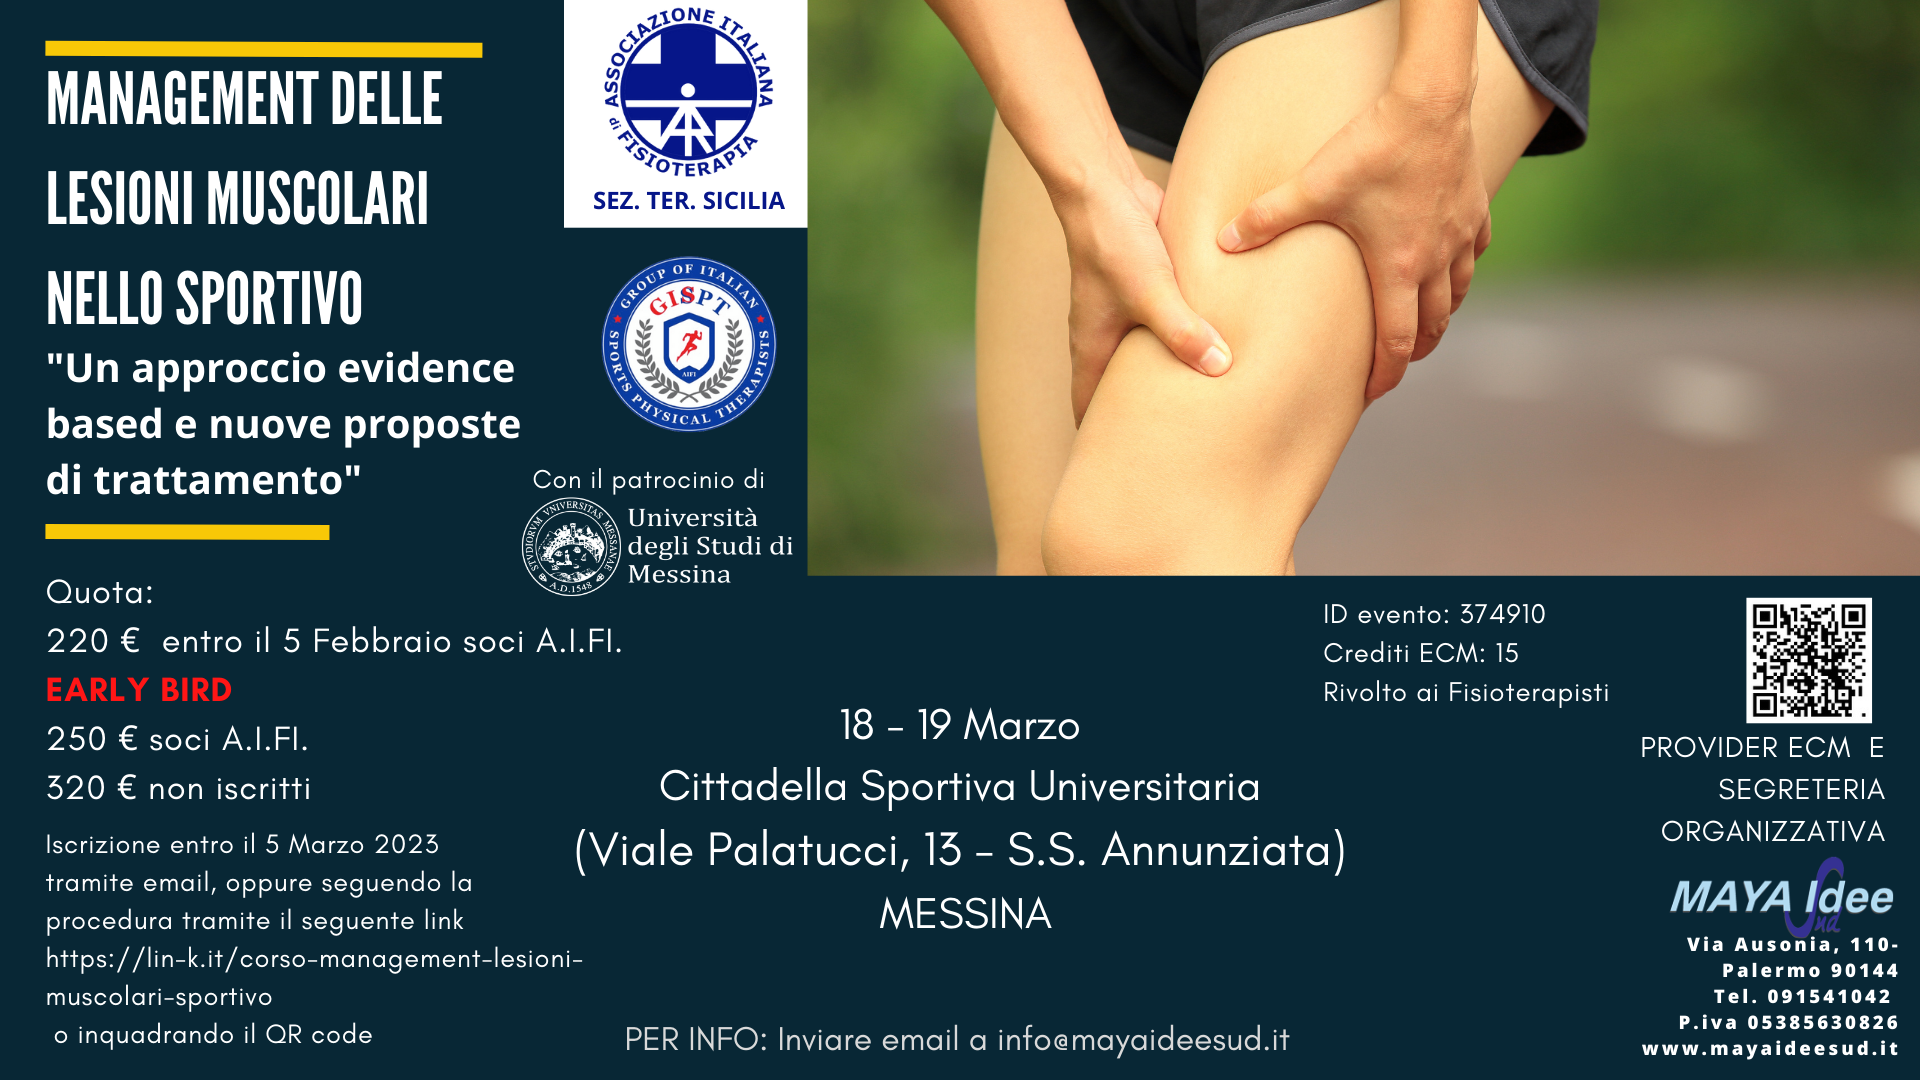 Evento ECM “Management delle lesioni muscolari nello sportivo”, 18-19 marzo, Messina